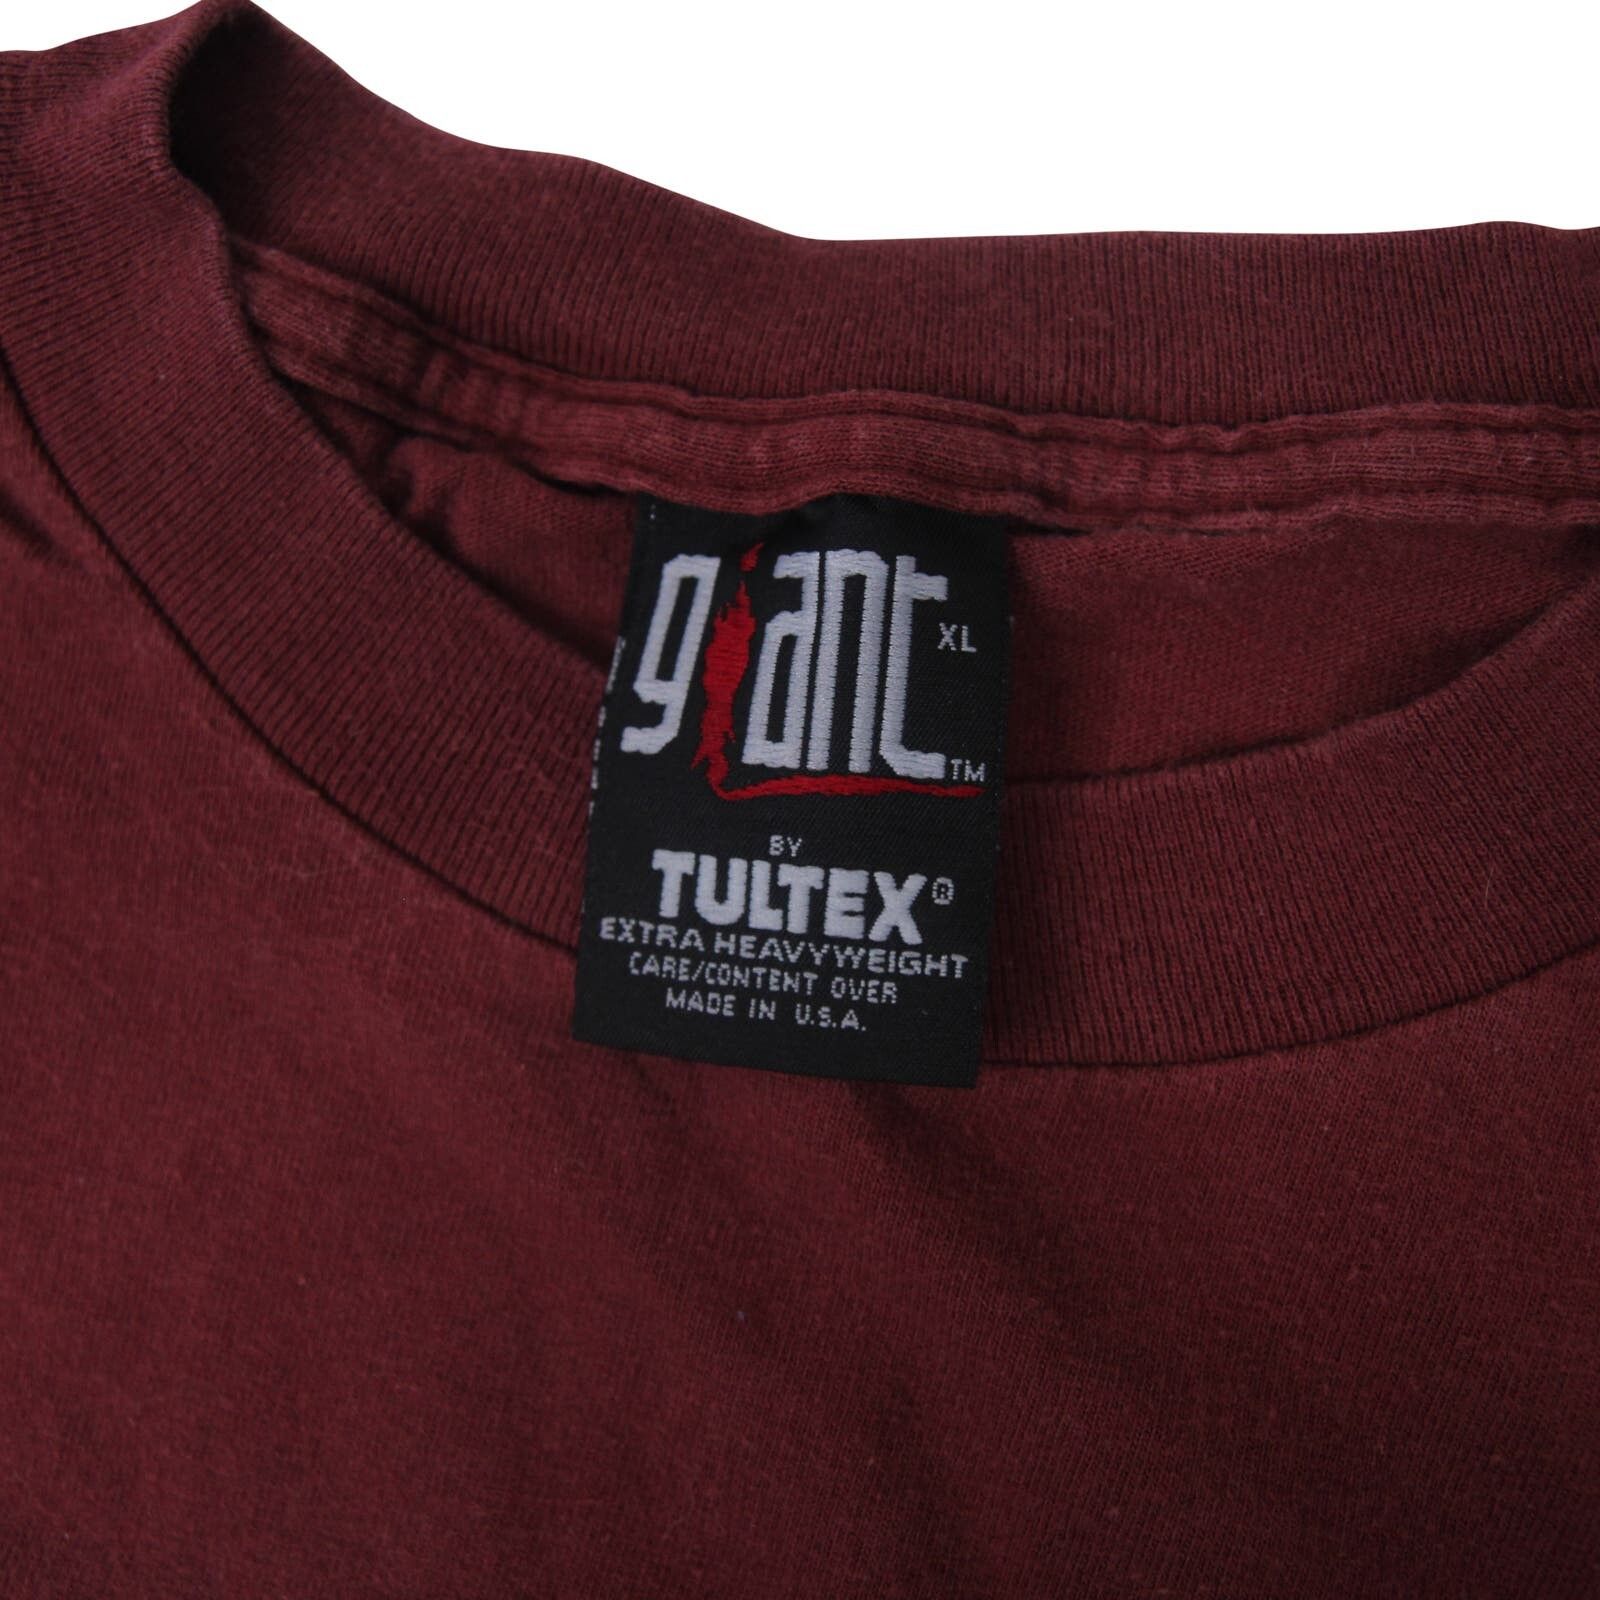 Vintage Vintage 1997 Rage Against the Machine Tour Shirt Size US XL / EU 56 / 4 - 4 Thumbnail